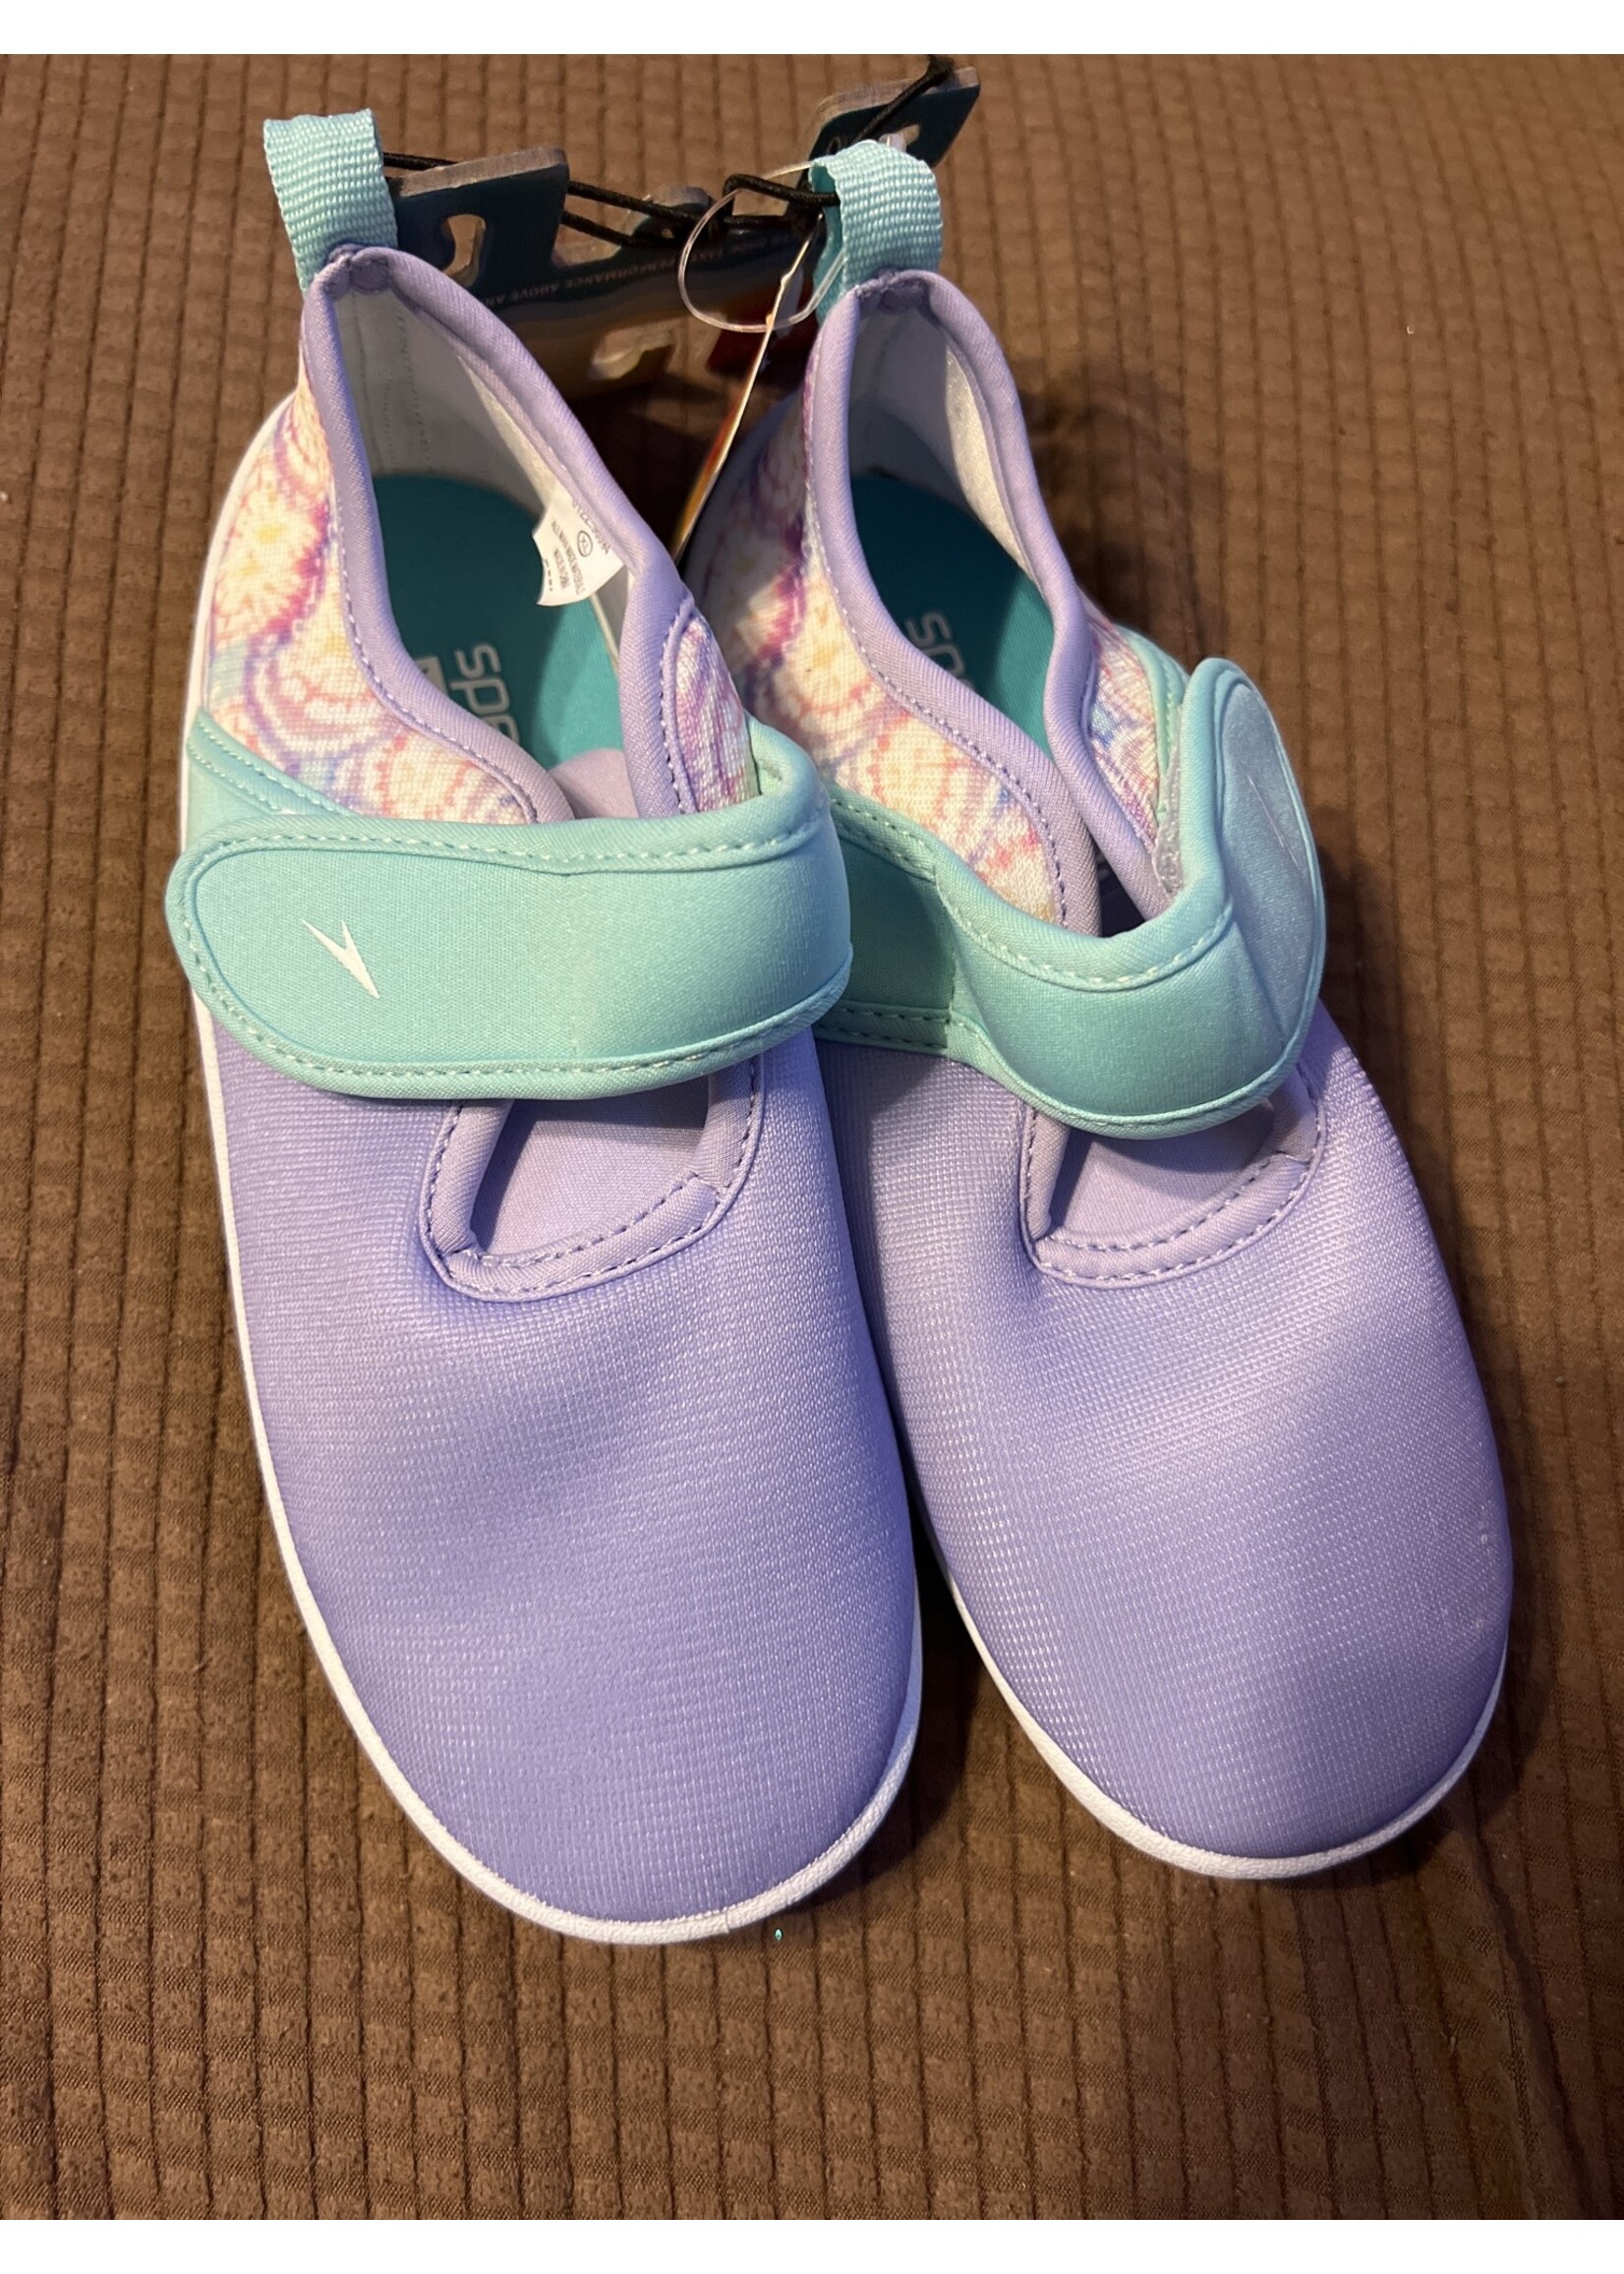 Speedo Toddler Printed Shore Explorer Water Shoes - Lilac Tie-Dye Burst 11-12